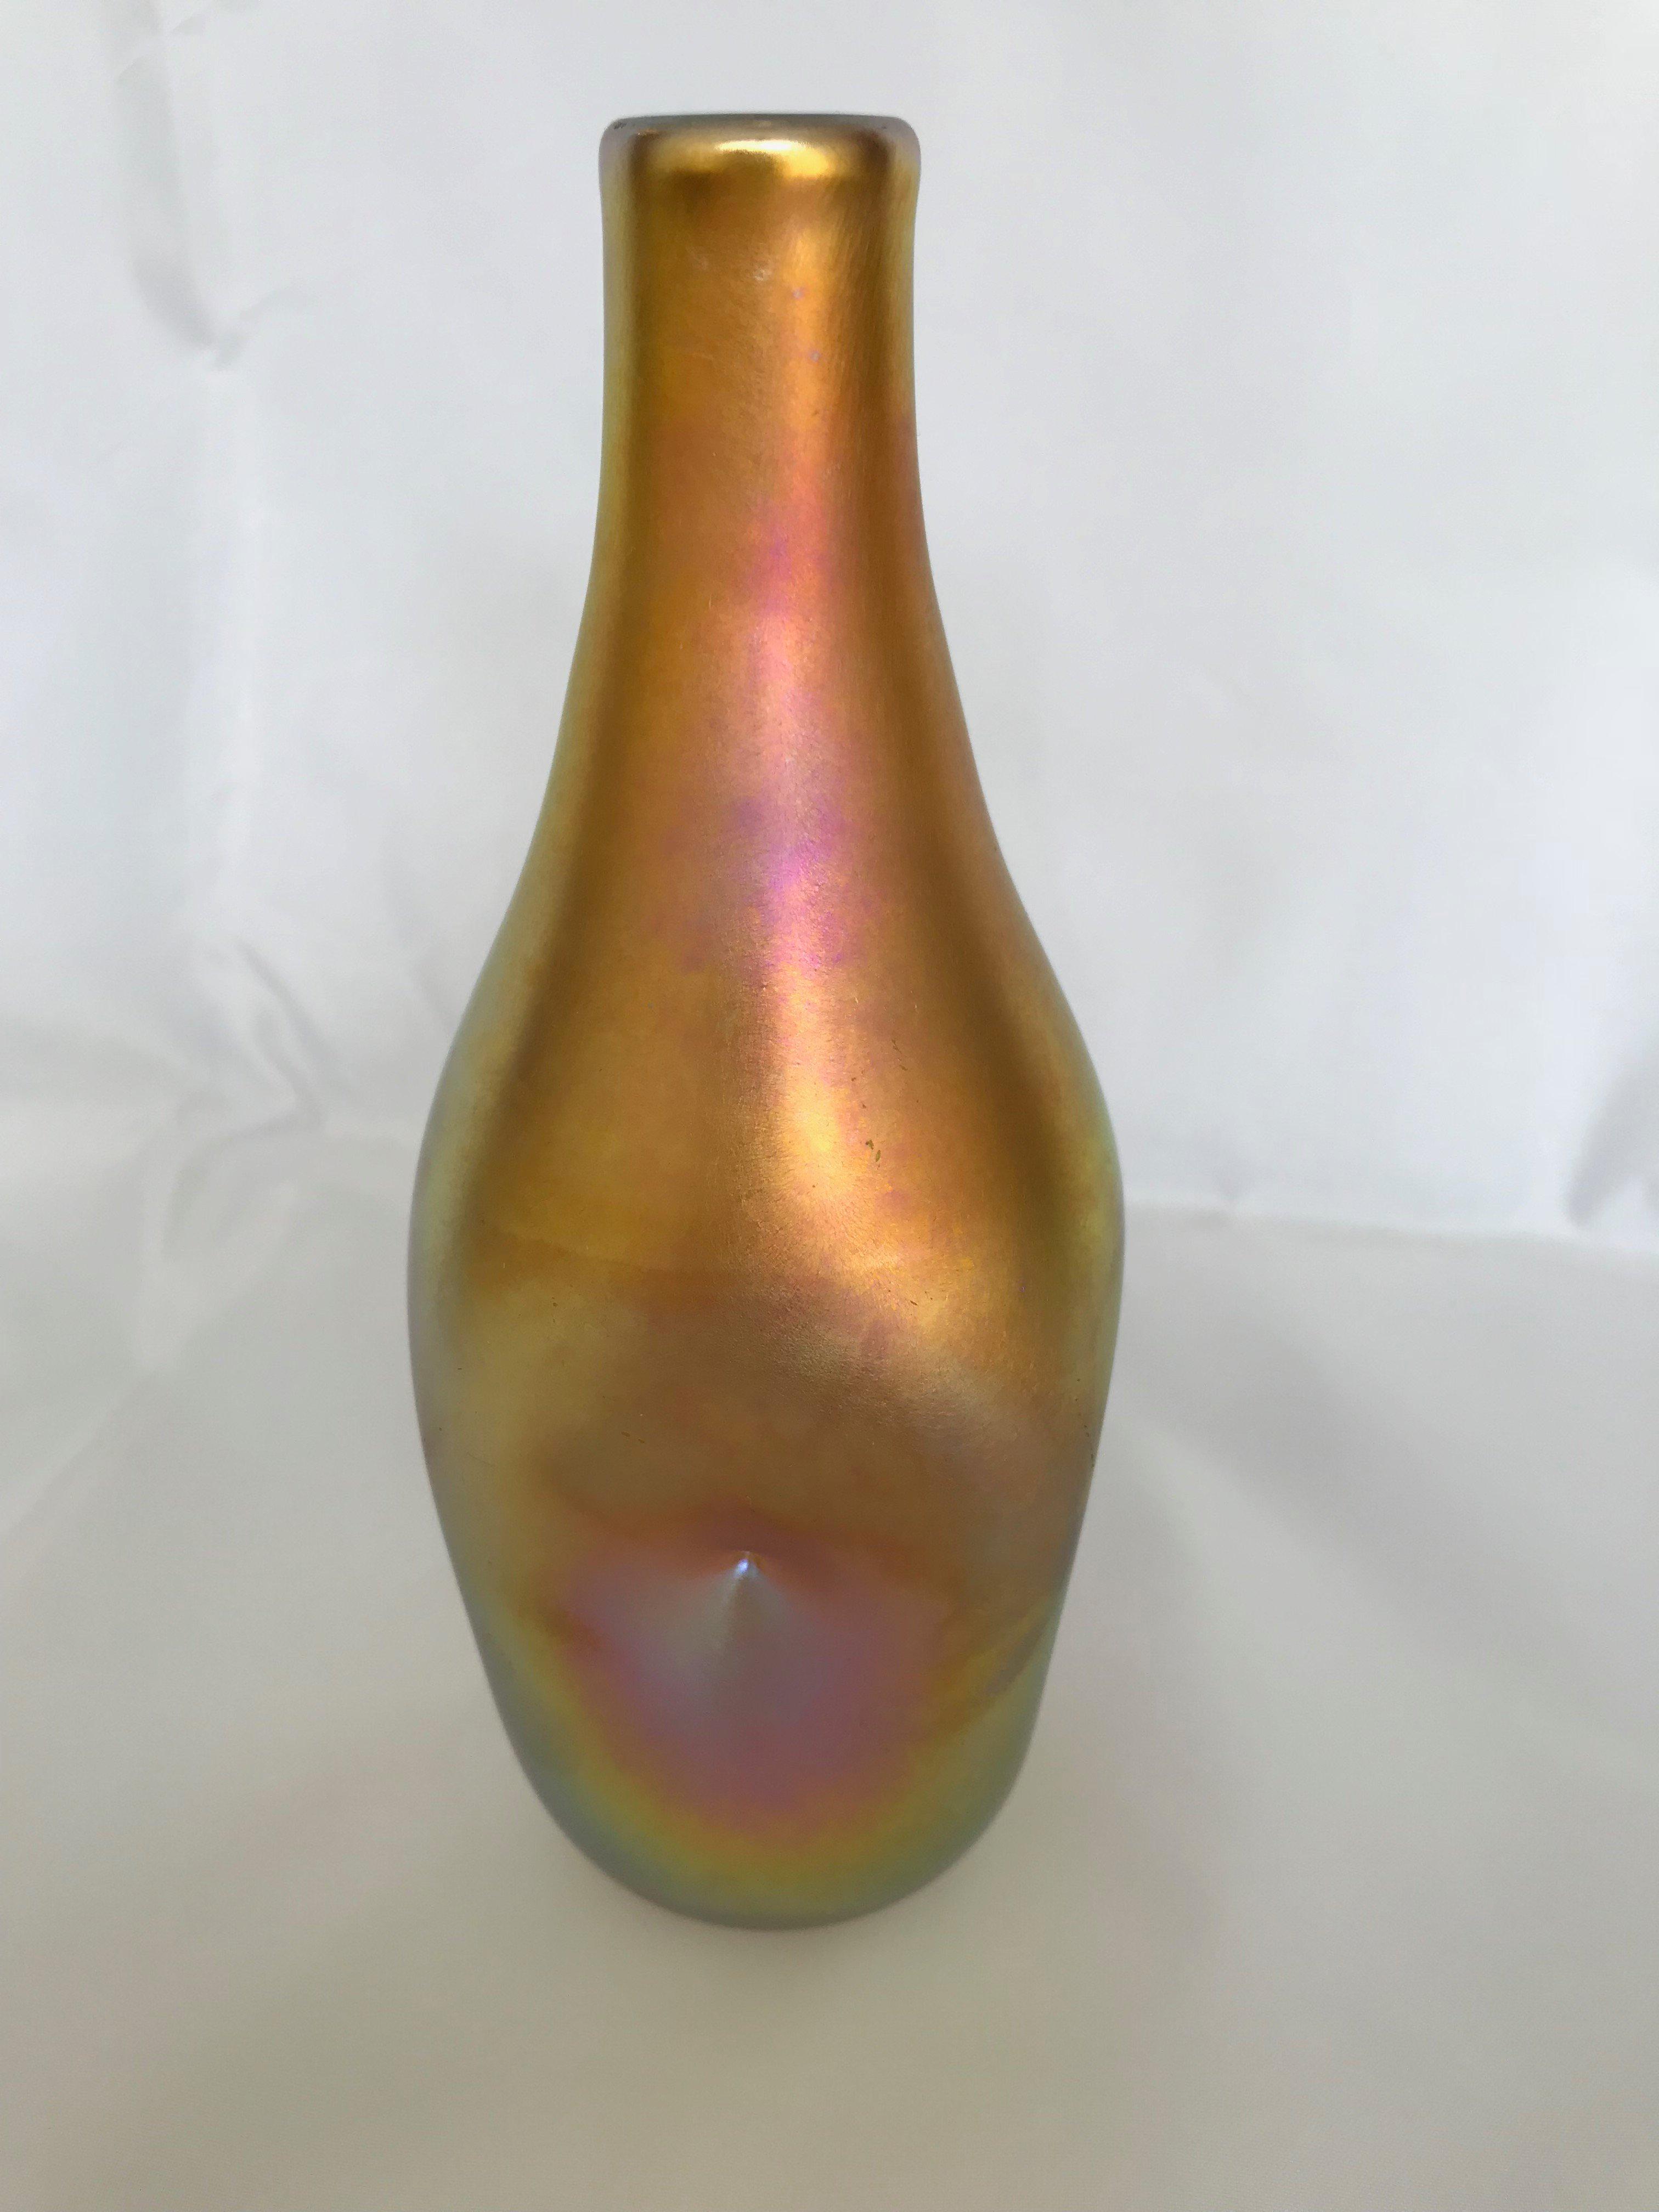 Quezal iridescent “Pinch” vase